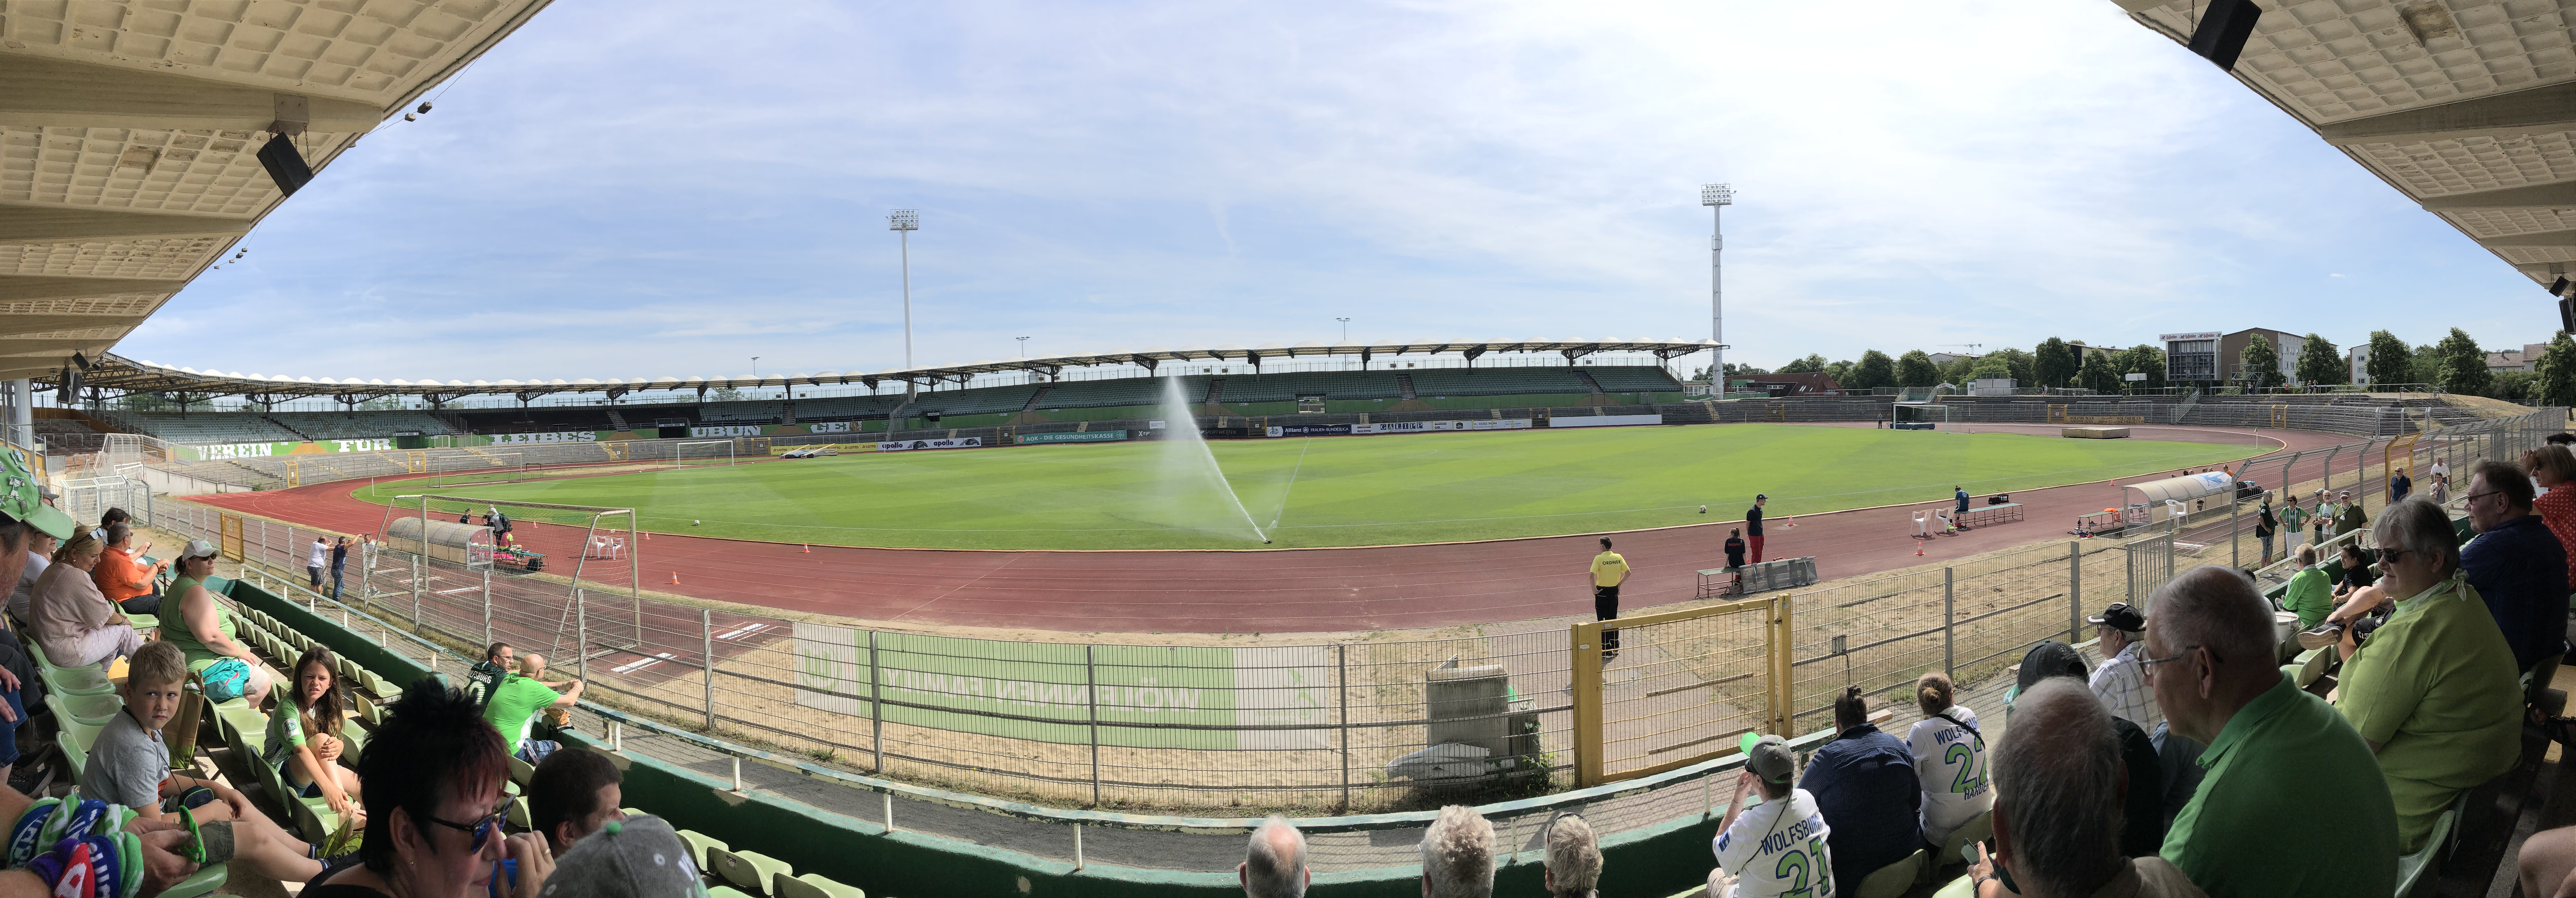 Testspiel gegen Ferencvaros Budapest am Elsterweg – 20. Juli 2019